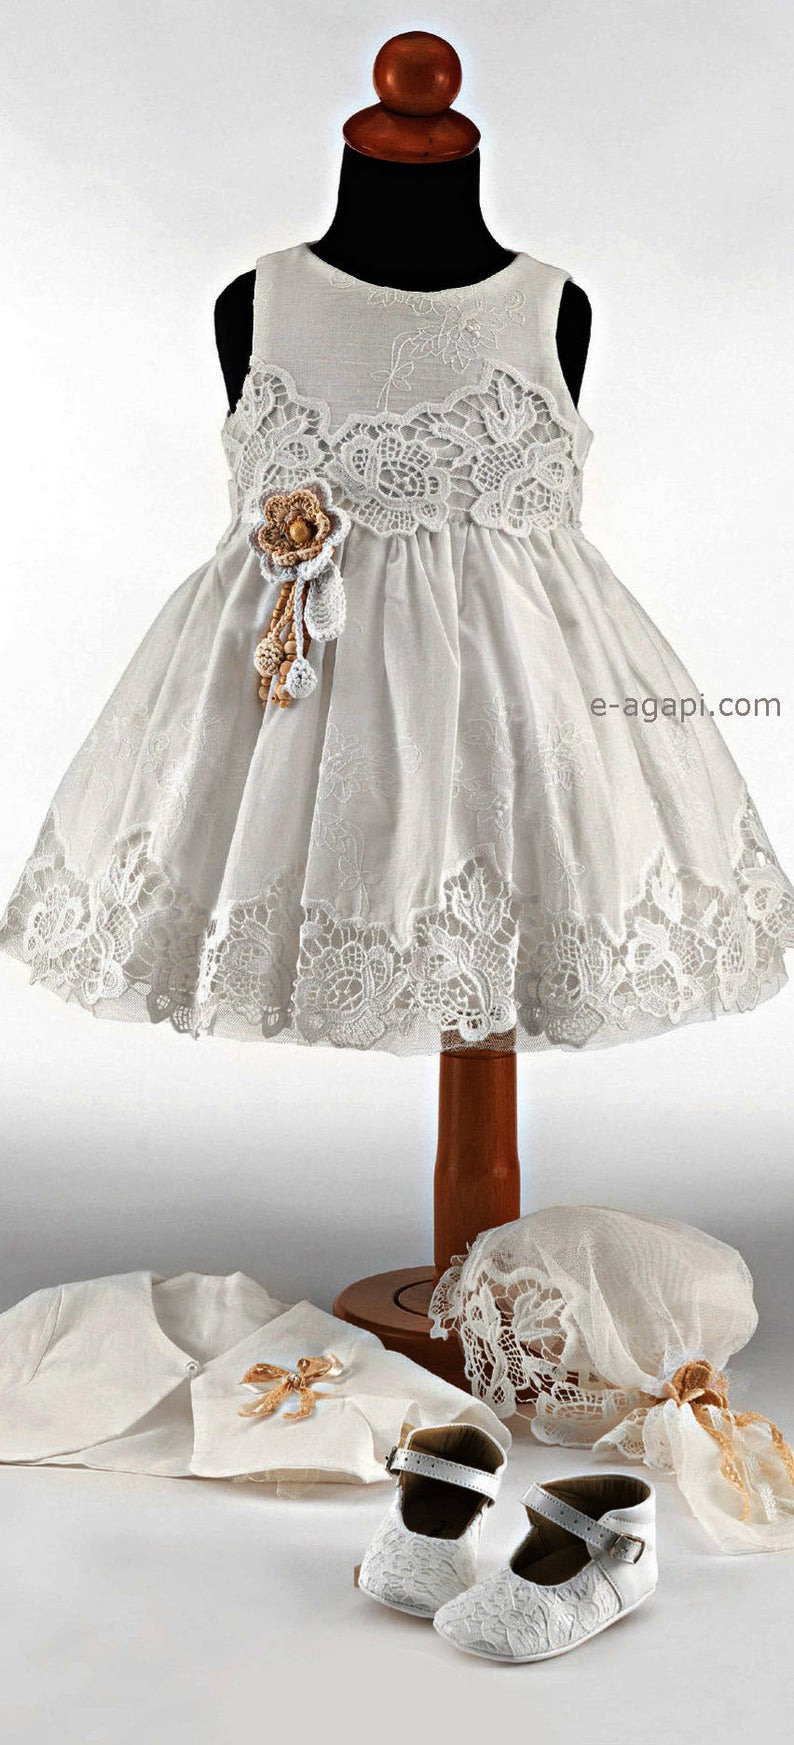 Weiße Taufe Kleid Spitze Häkeln Blume Mädchen Kleid | Etsy